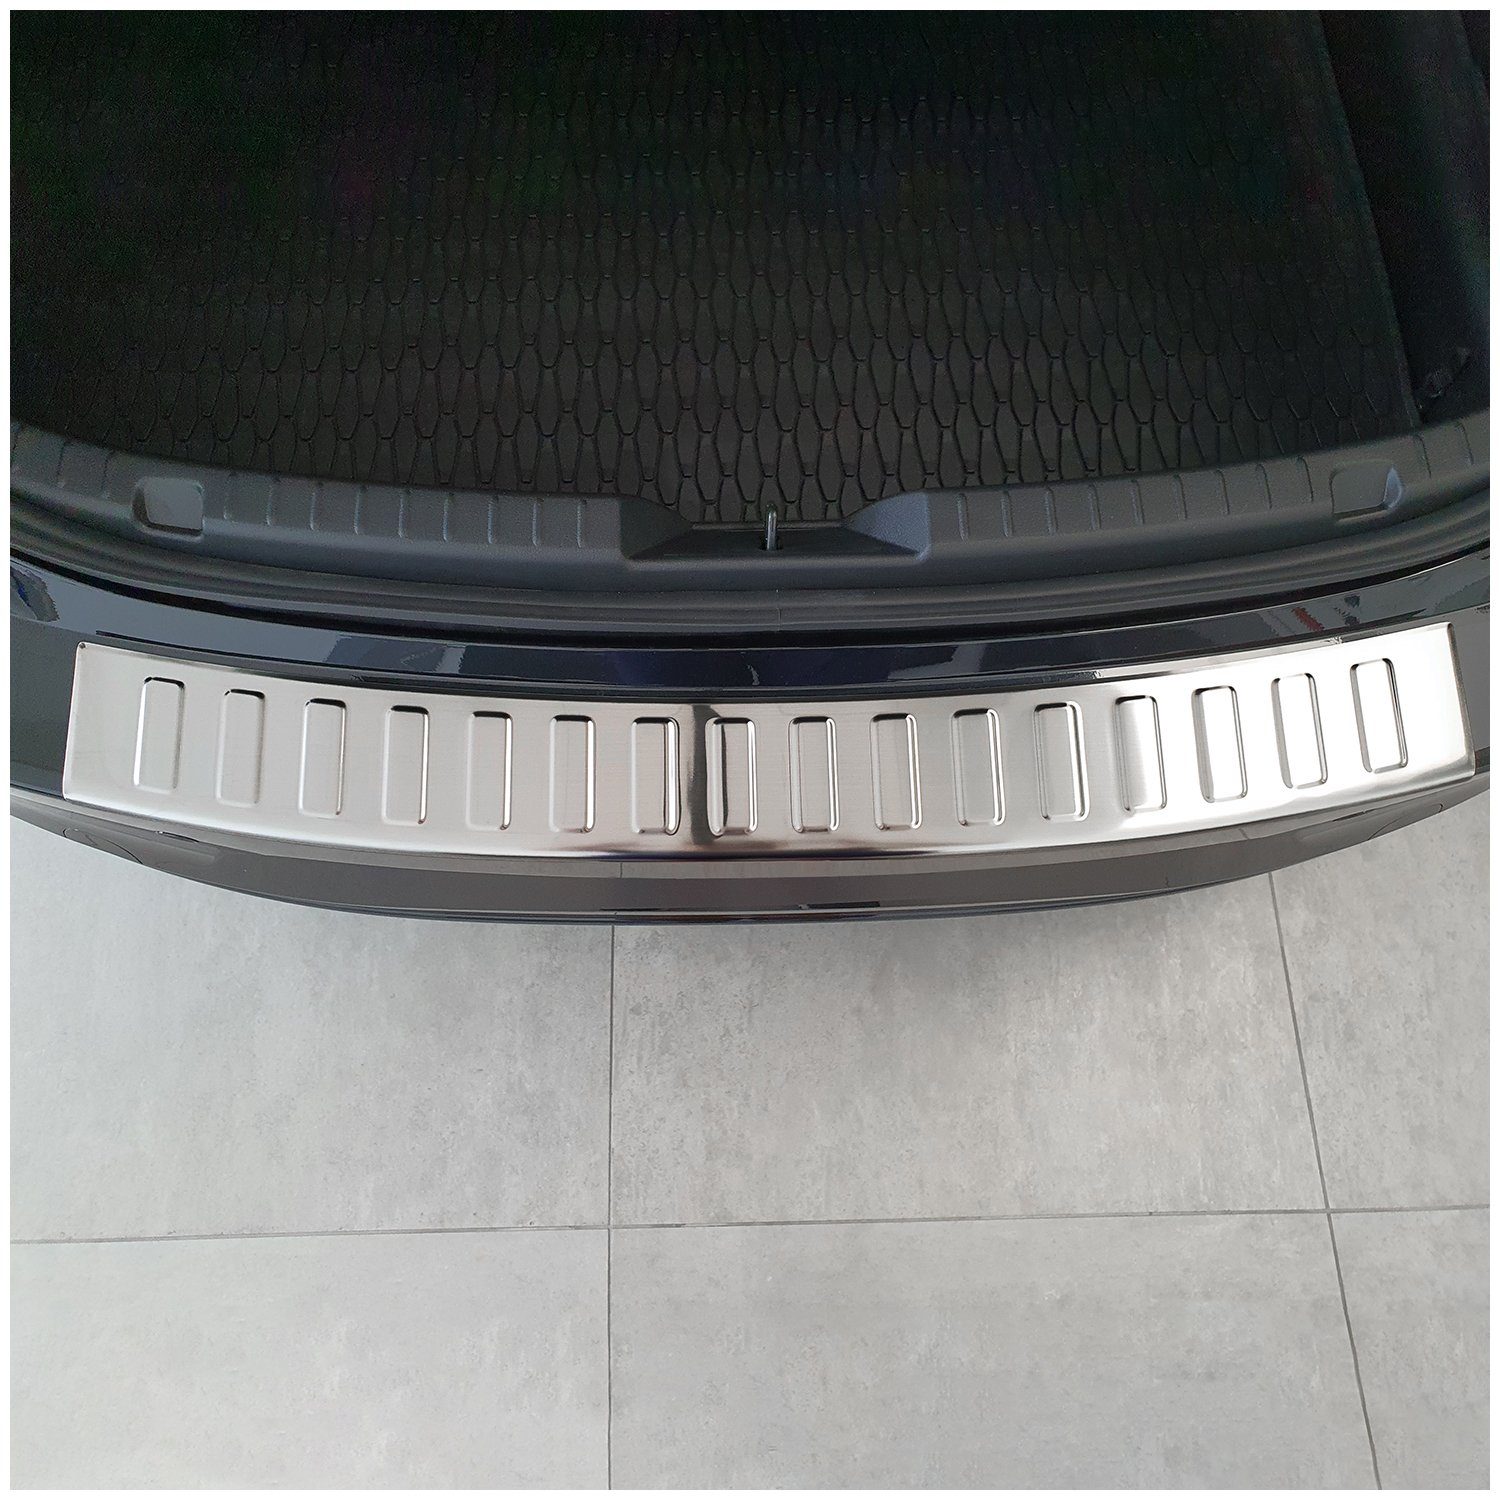 passgenau Silber Ladekantenschutz 3 L403 für Limo Mazda 2019- tuning-art Edelstahl